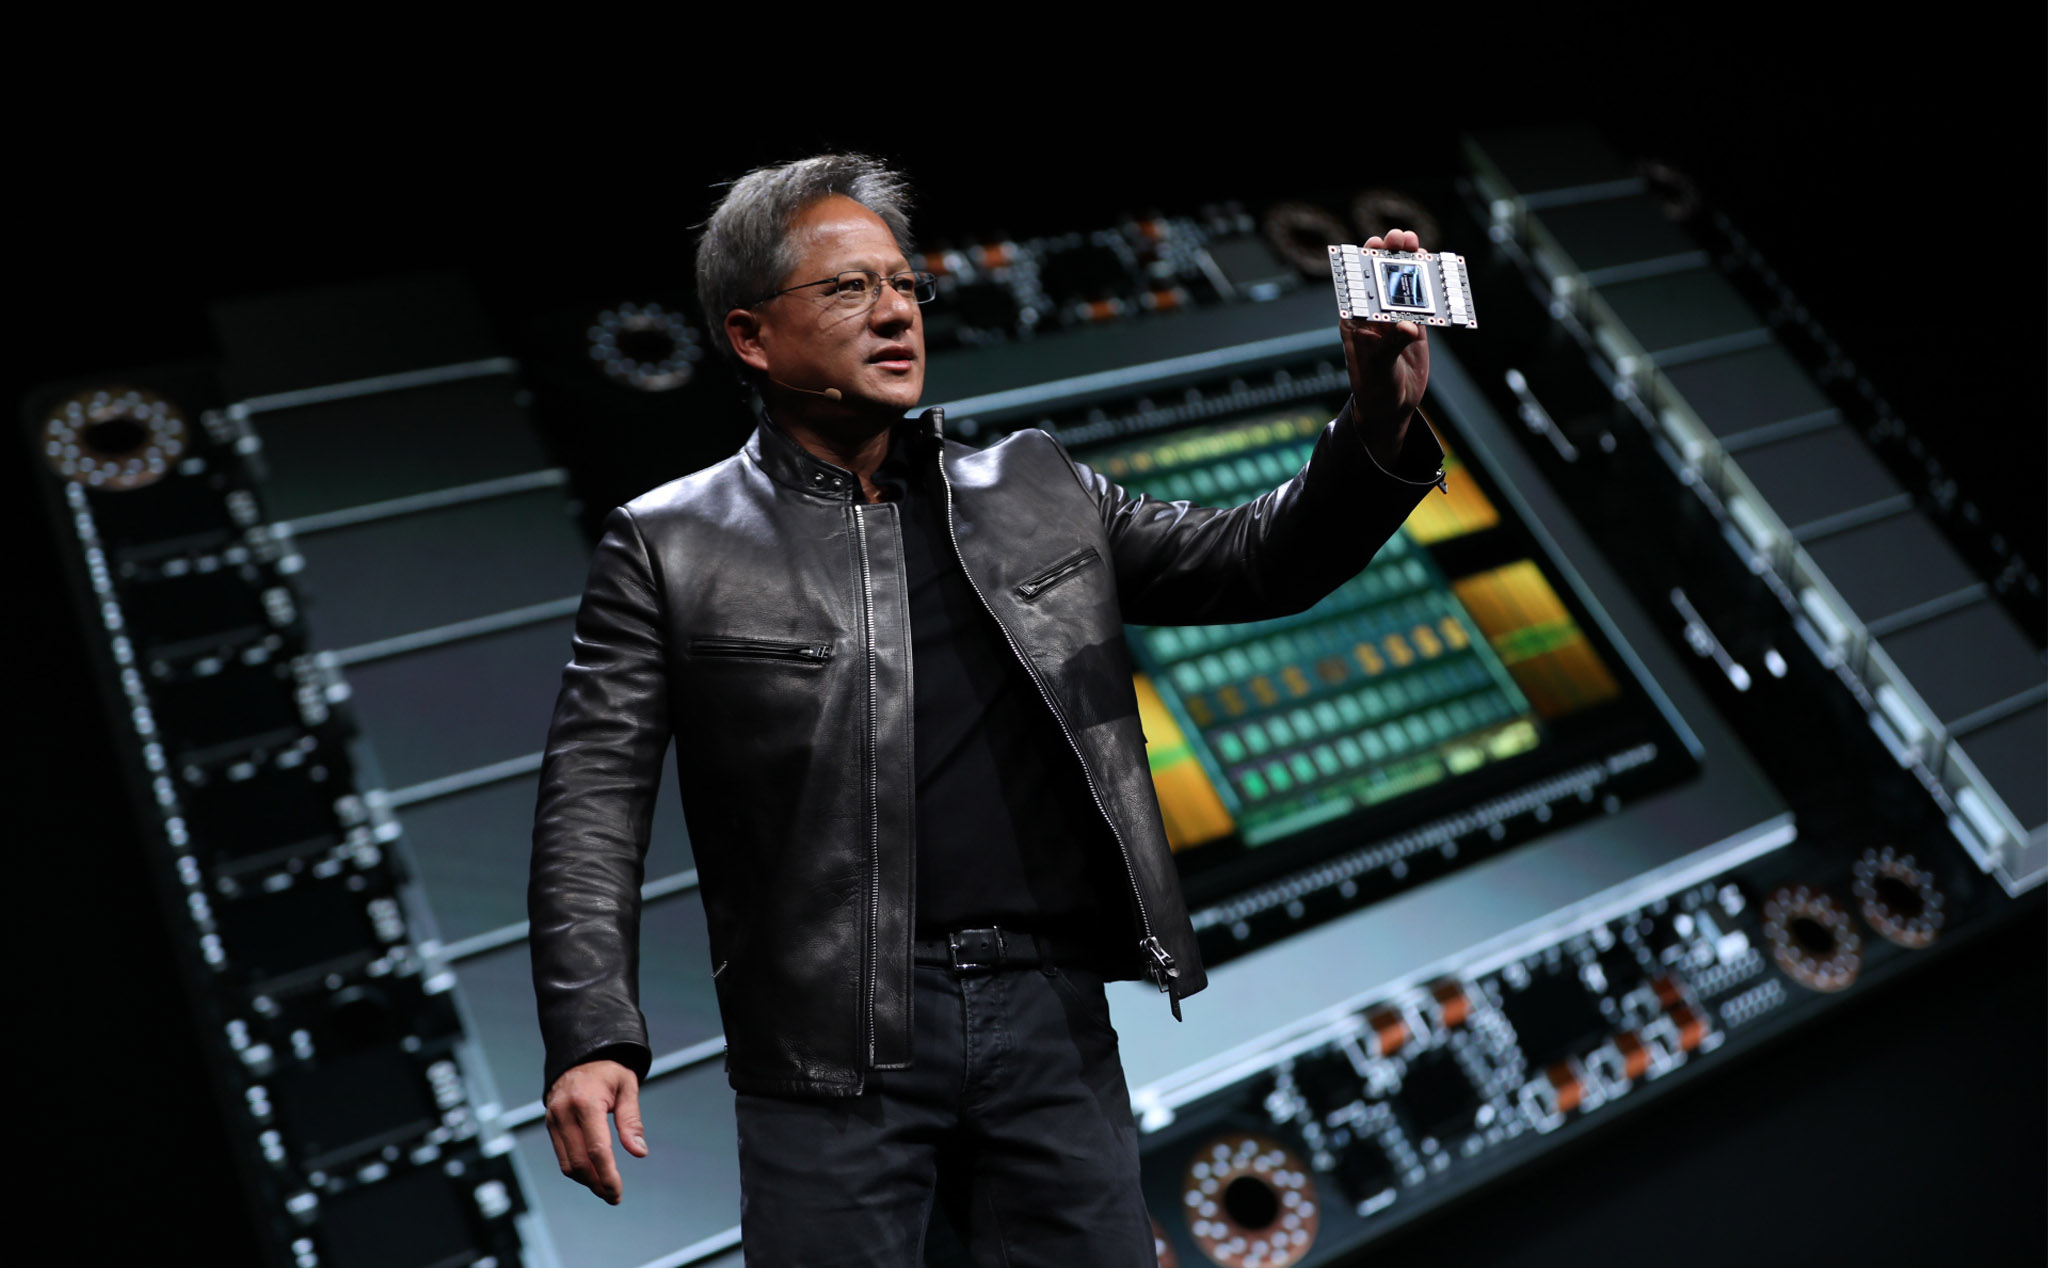 Nvidia báo lãi quý I đạt kỷ lục 3.66 tỷ USD, bất chấp cơn sốt chip bán dẫn toàn cầu